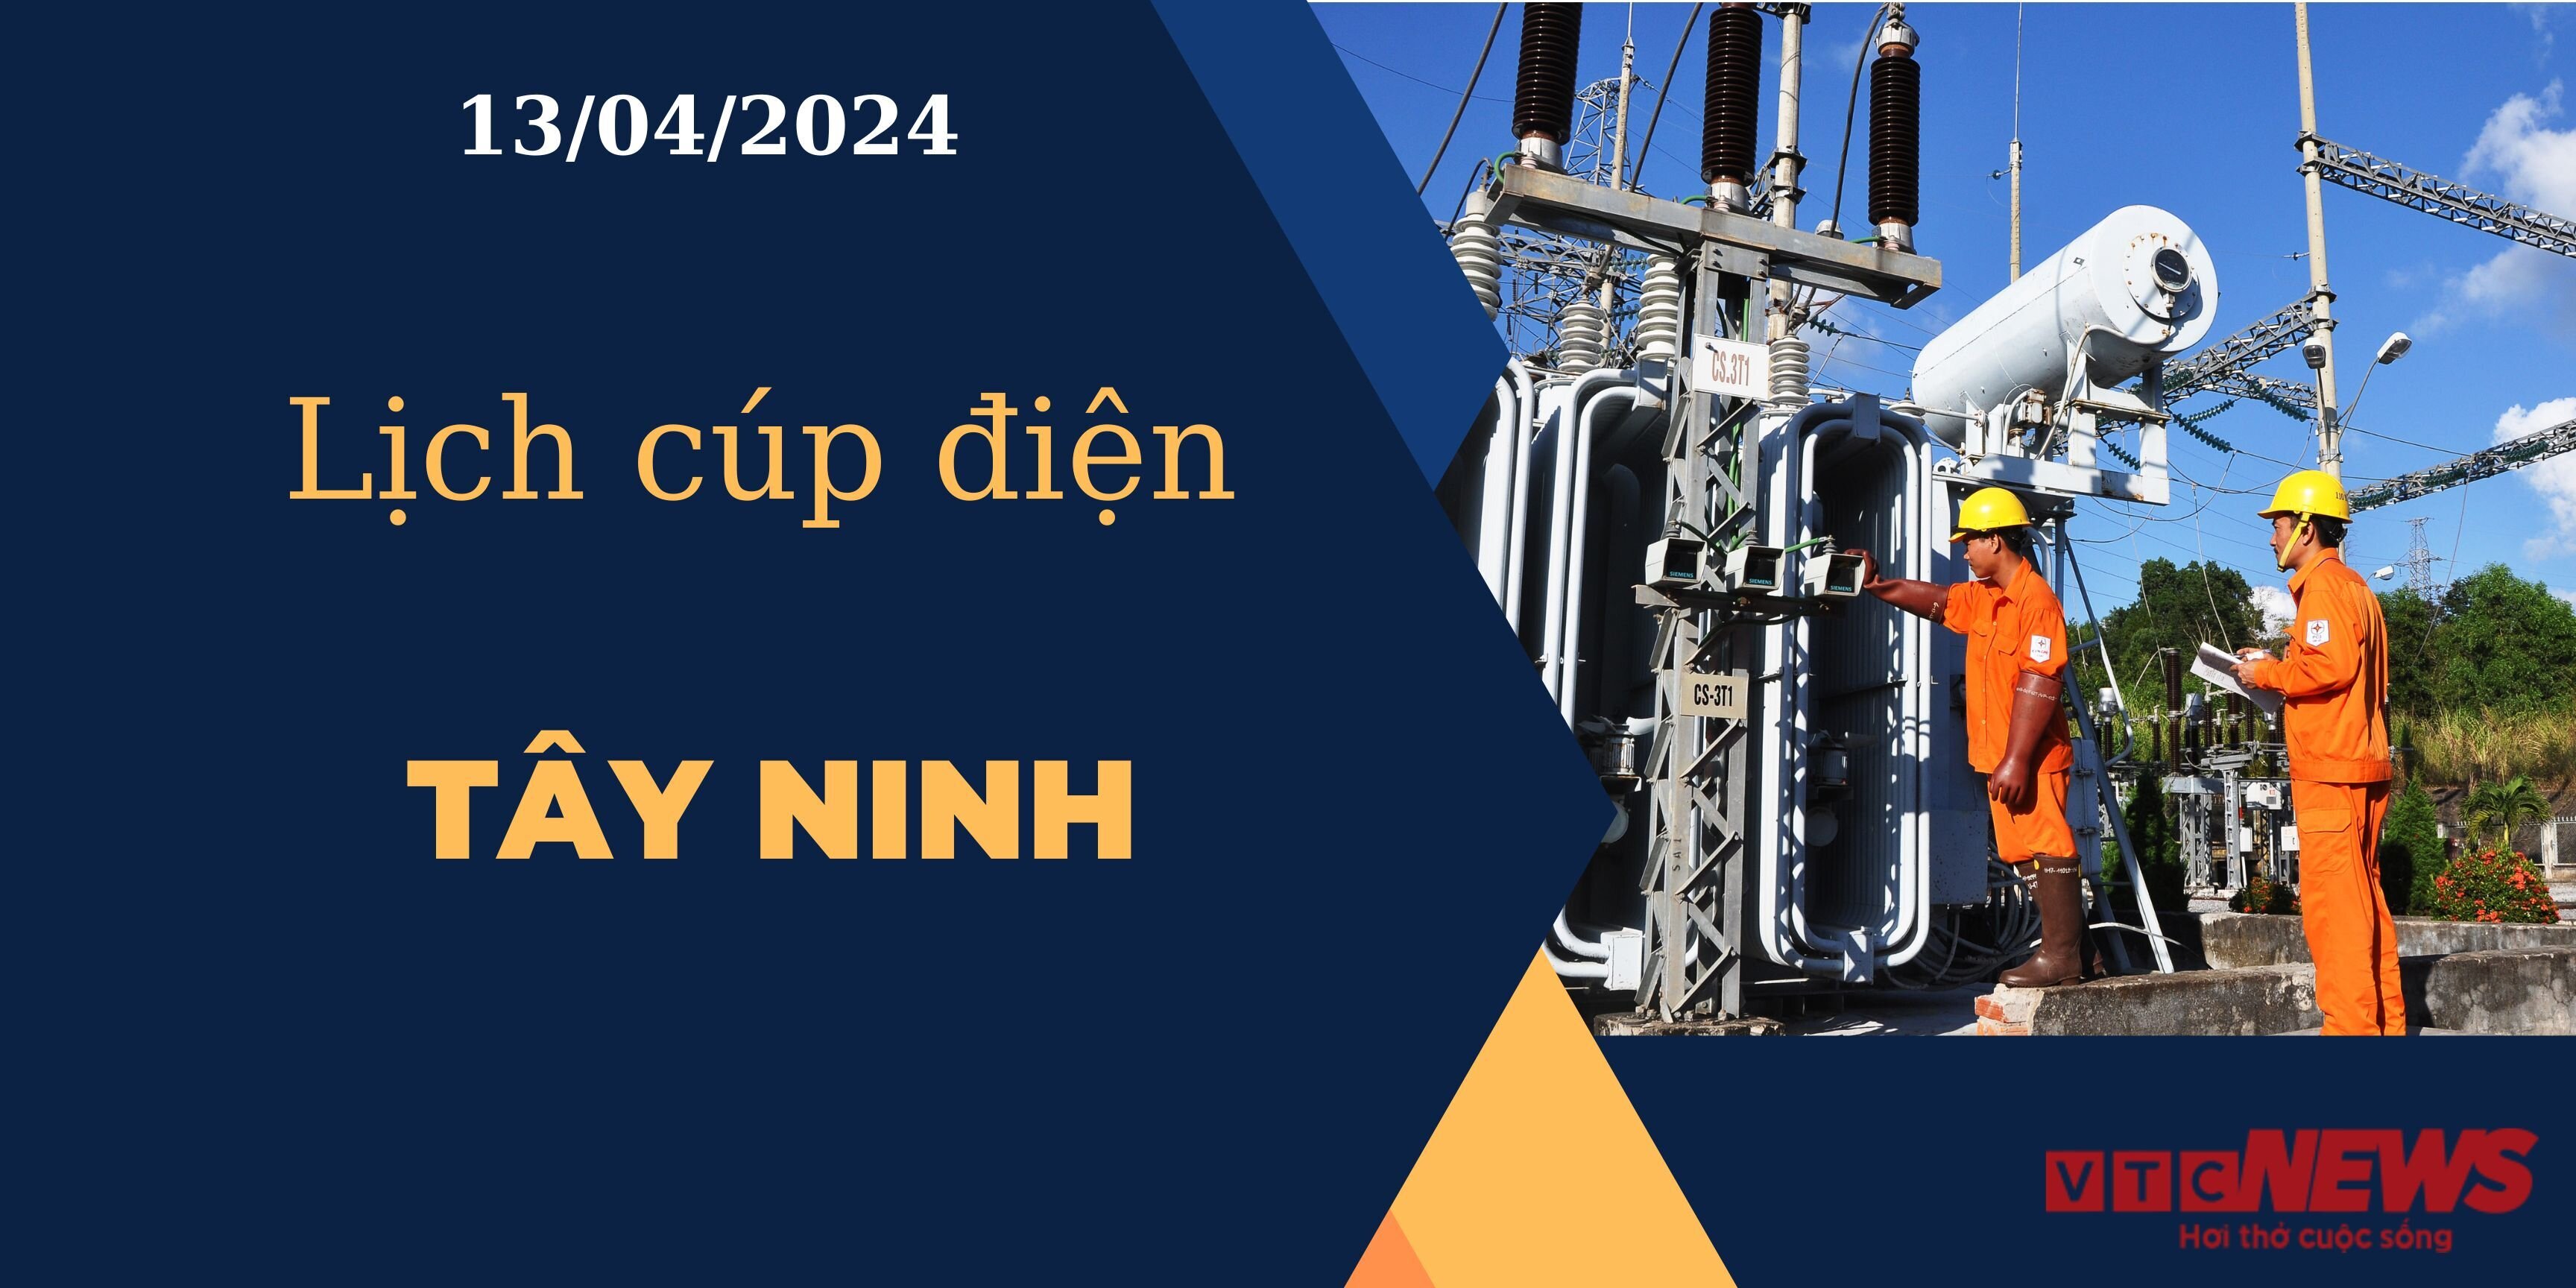 Lịch cúp điện hôm nay ngày 13/04/2024 tại Tây Ninh